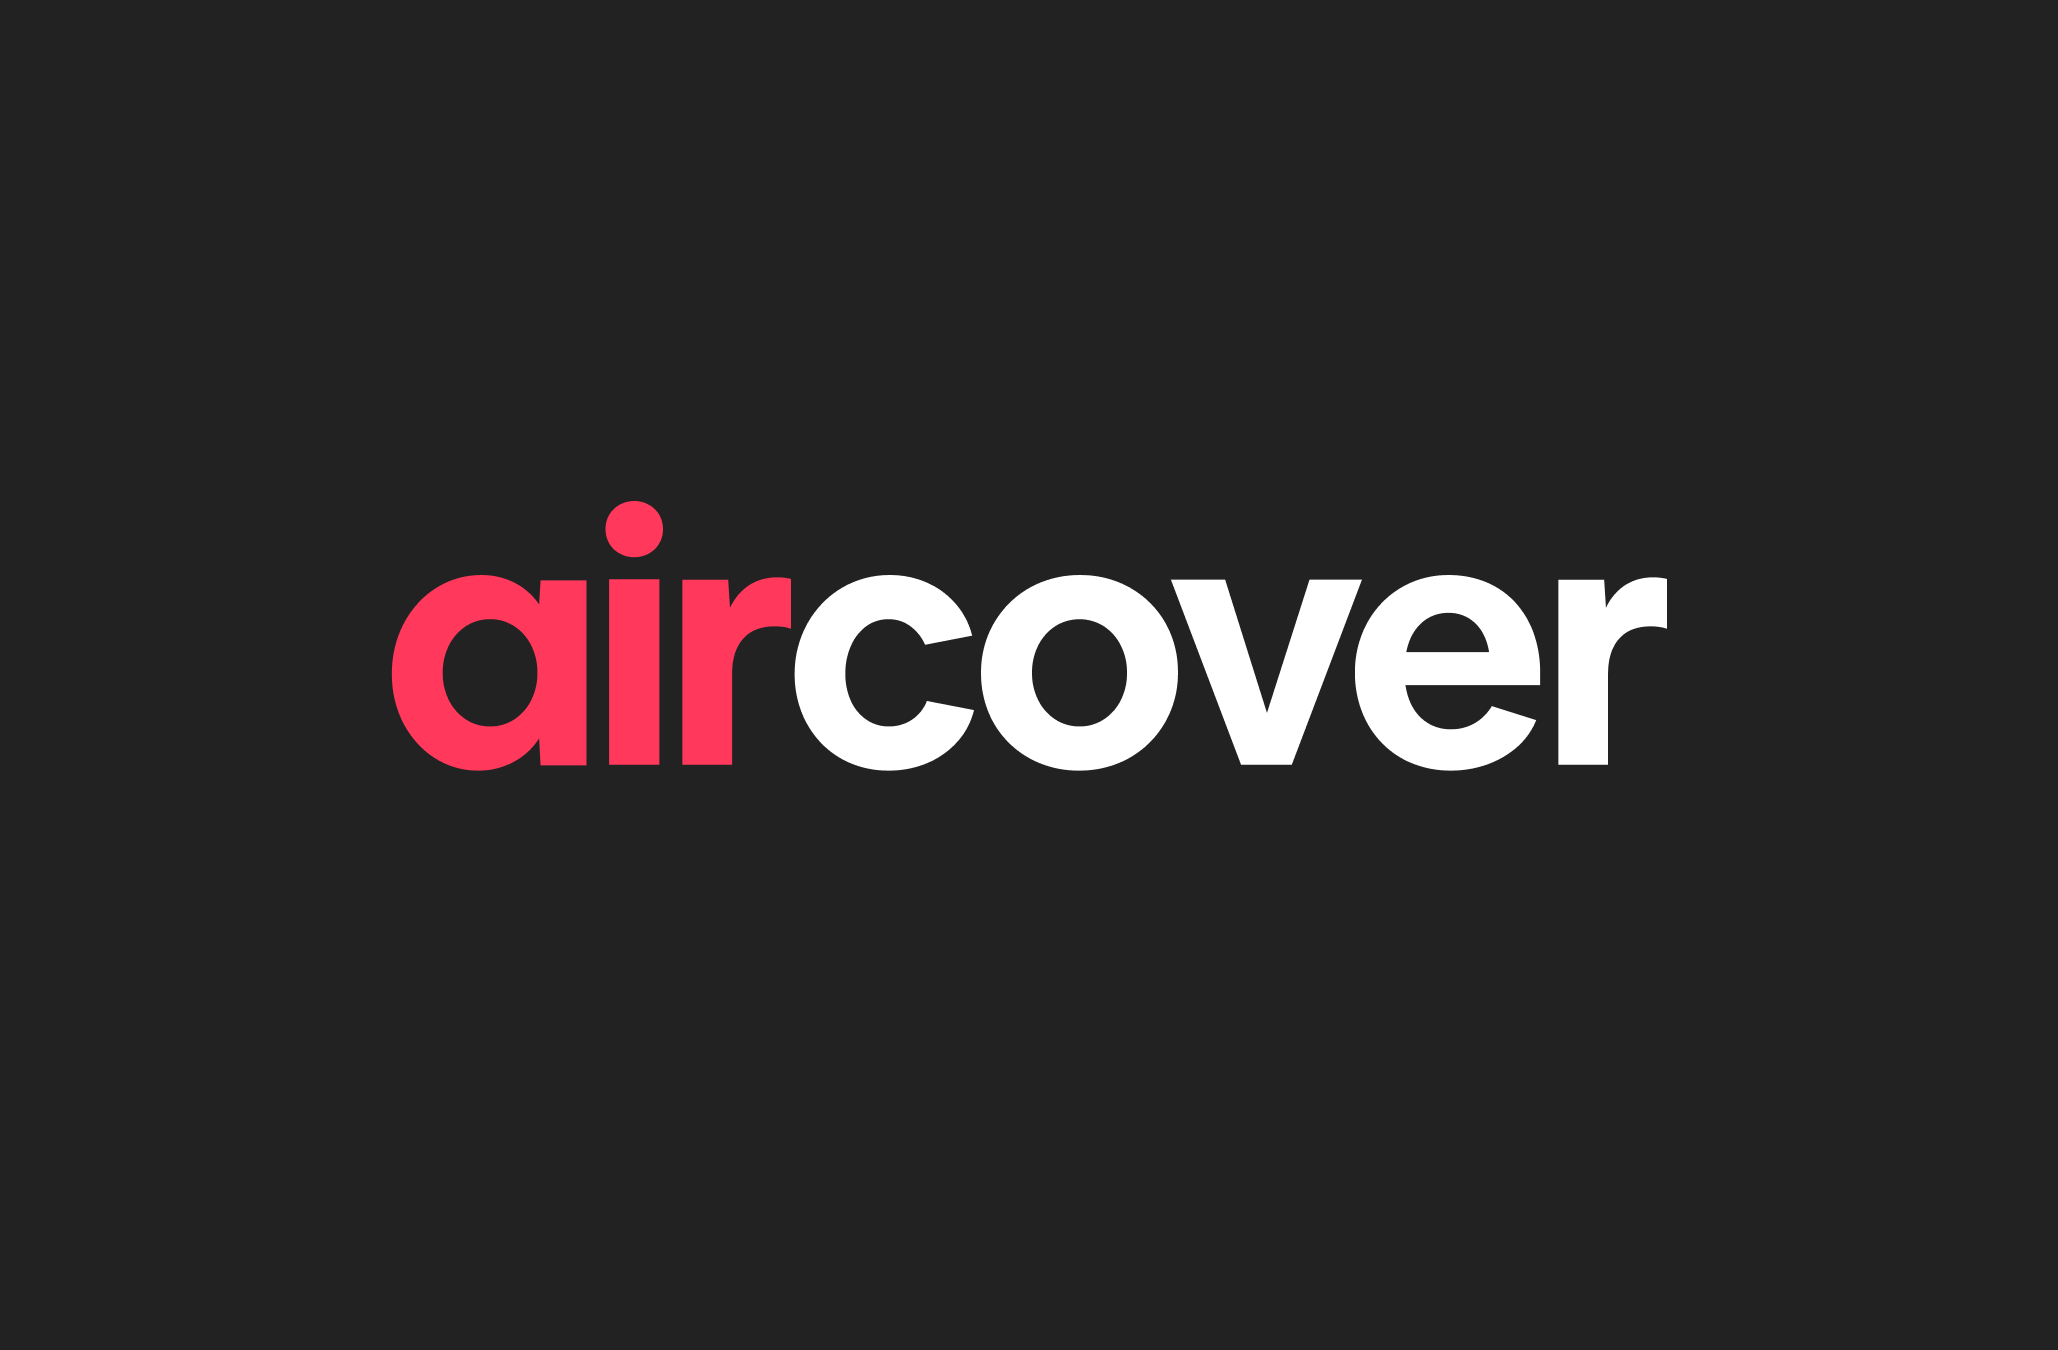 AirCover-logoen med røde og hvite bokstaver på svart bakgrunn.